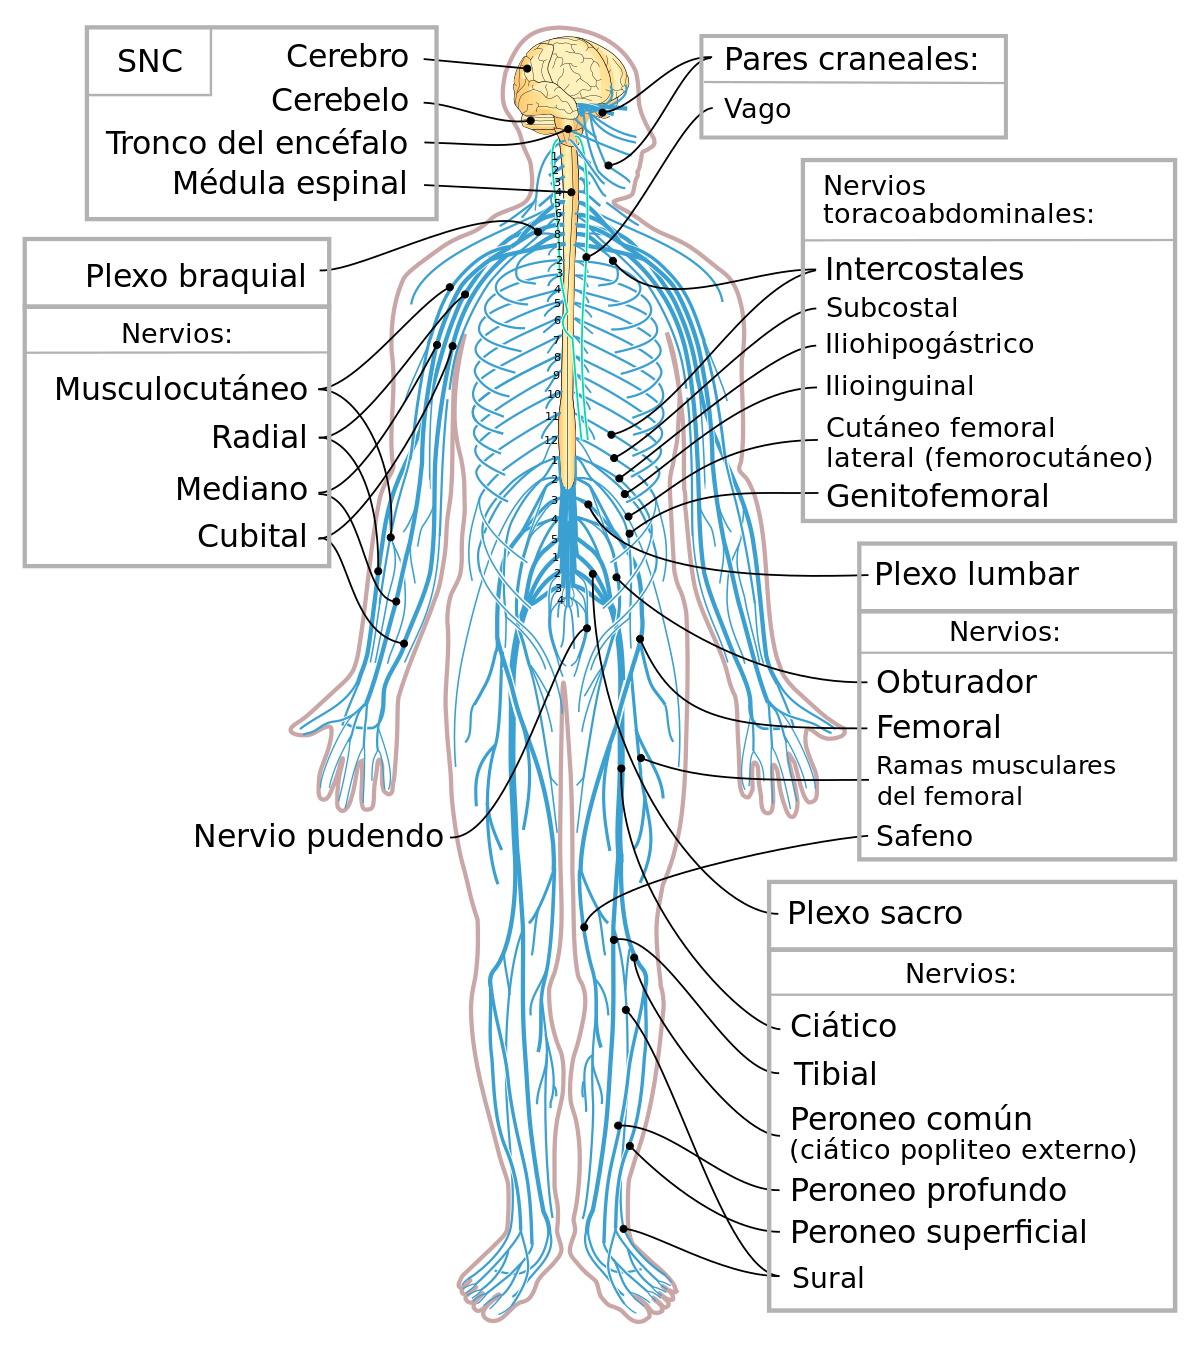 Sistema nervioso humano - Wikipedia, la enciclopedia libre